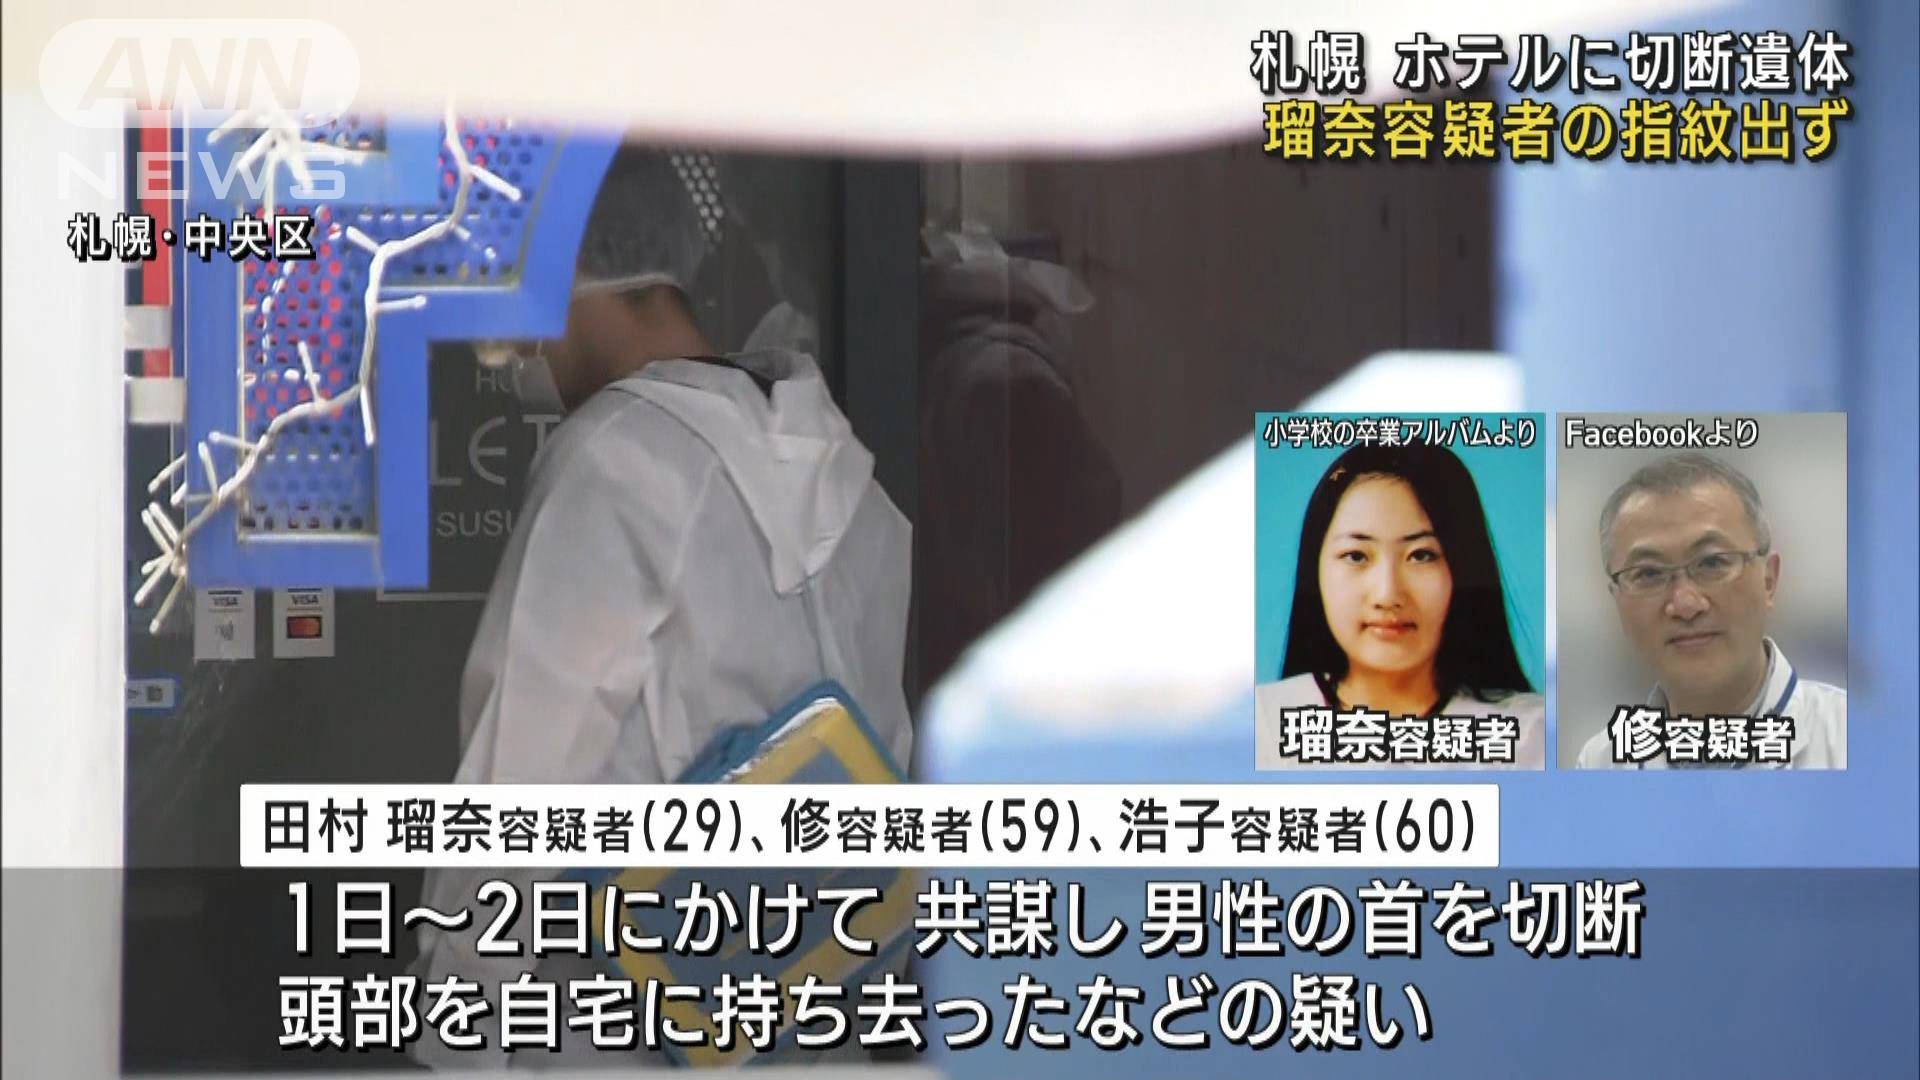 札幌 切断遺体 逮捕の女 事件当日より前に被害者と飲食店で会う